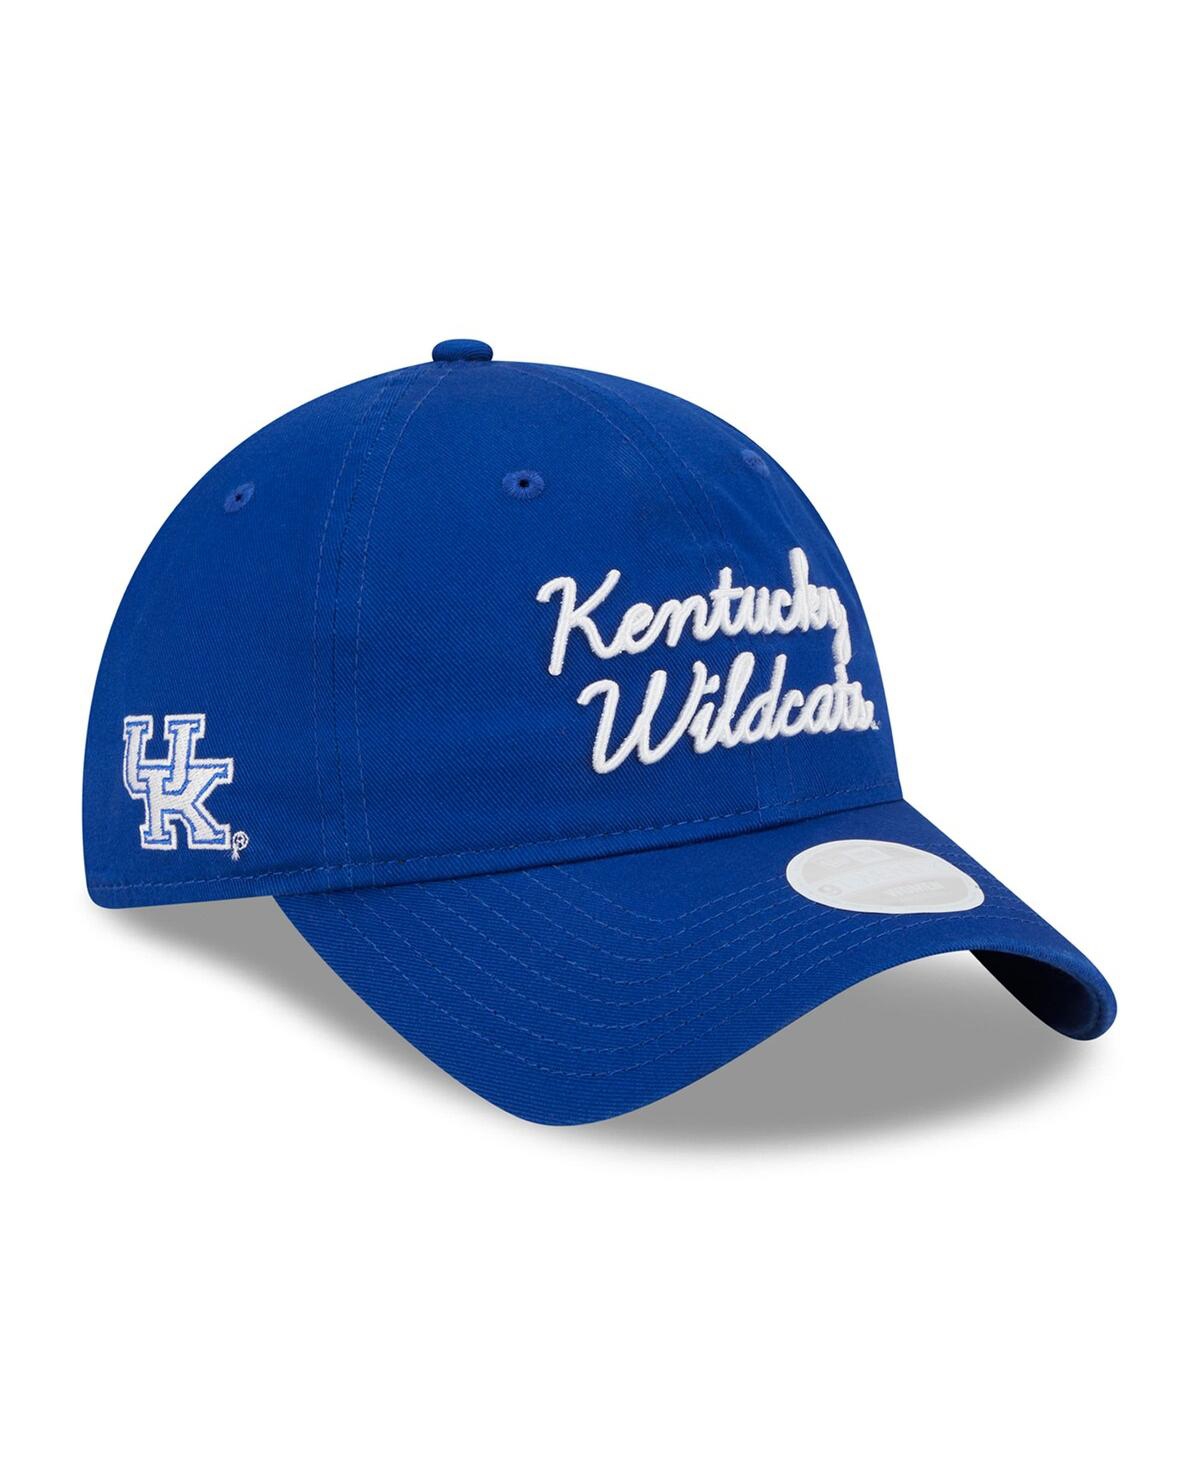 New Era Women's  Royal Kentucky Wildcats Script 9twenty Adjustable Hat